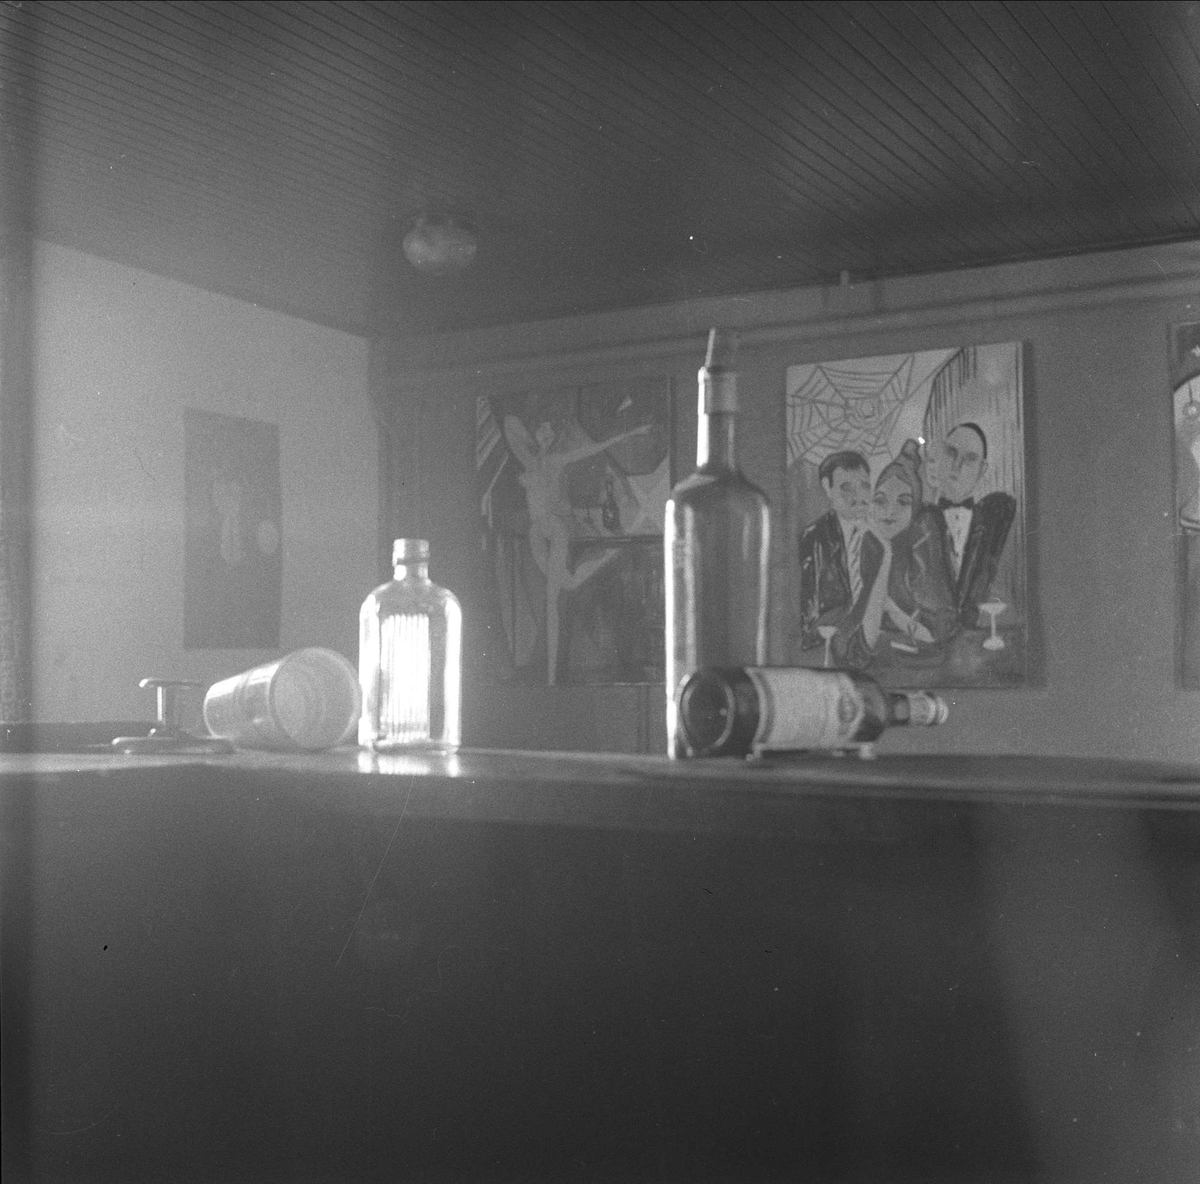 Breidablikk turisthotell, Sør-Aurdal, mai 1957. Flasker og dekorasjon.